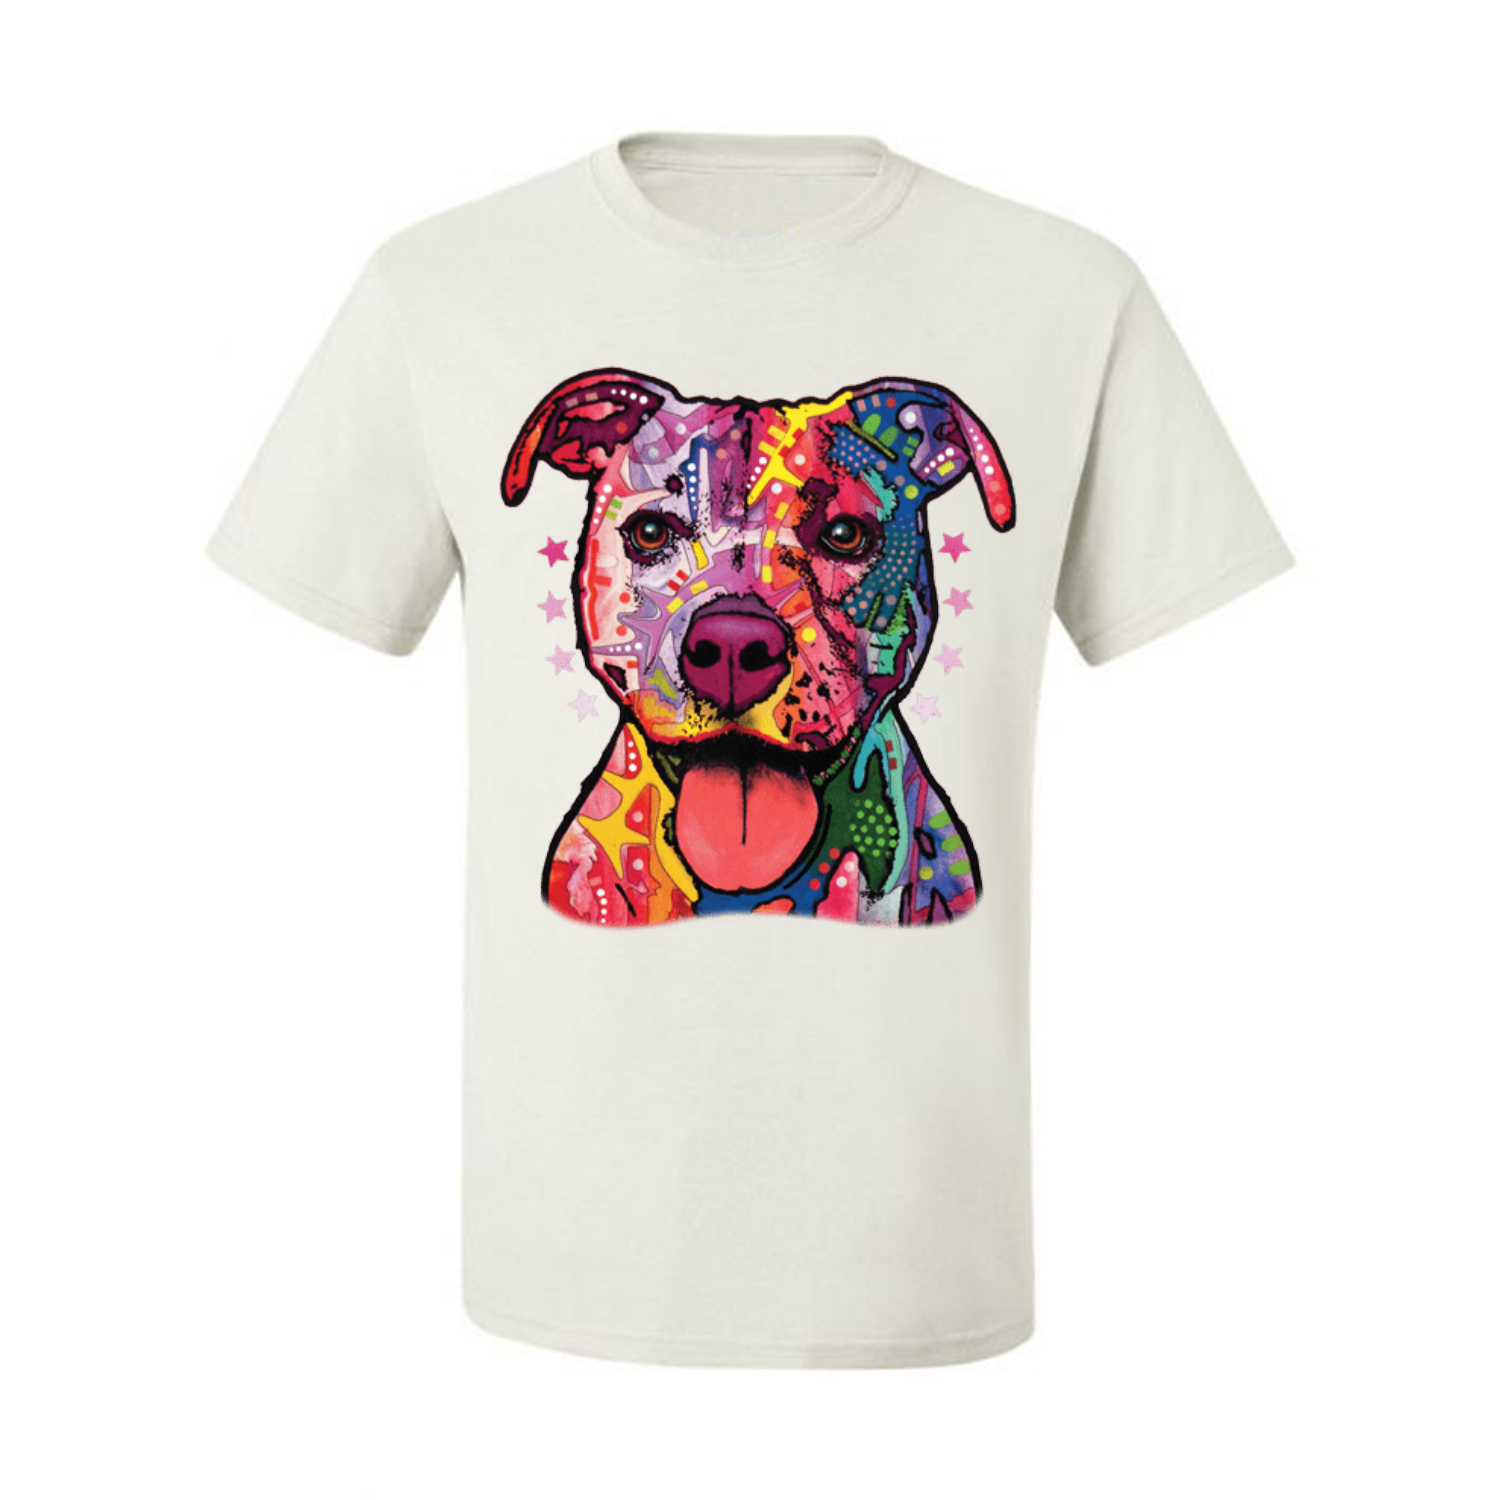 Da Uomo Grafica T-shirt nera Maleducato cani Pitbull RECINZIONE sfondo Slim Fit 